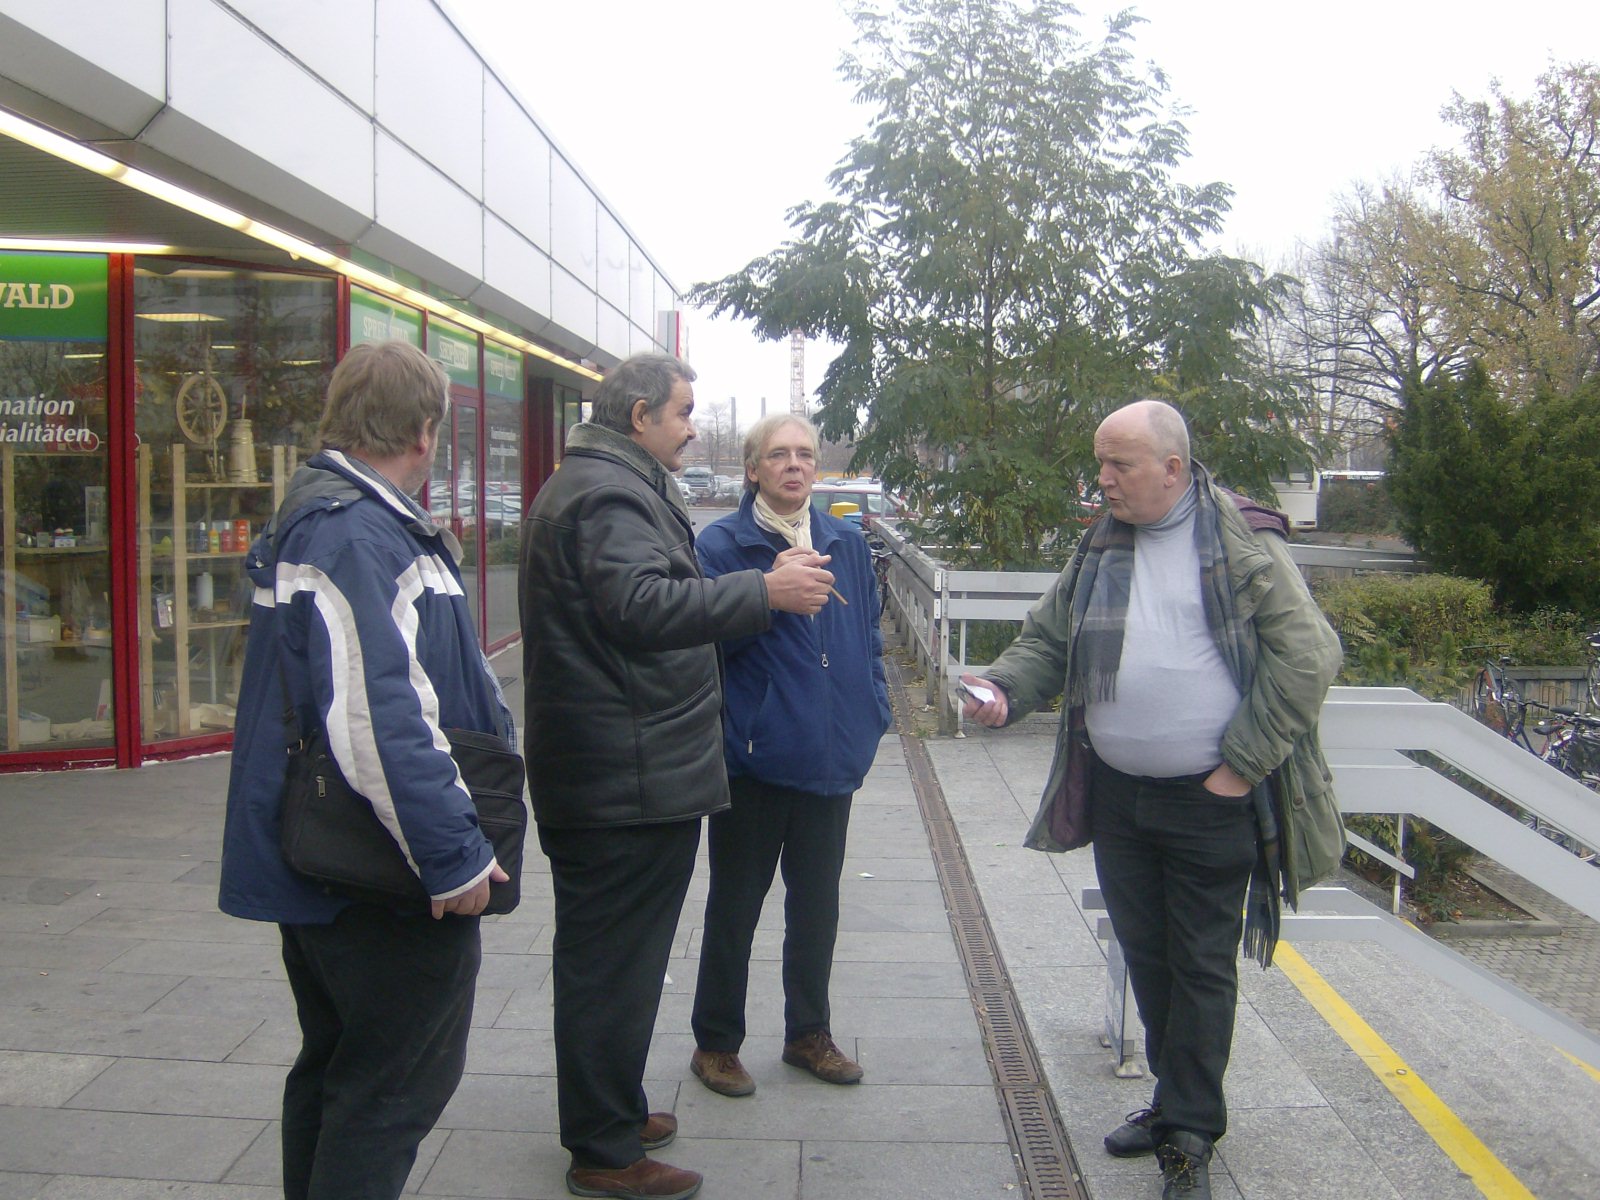 Farbfoto: Vor dem Bahnhof in Cottbus im November des Jahres 2011. Von links nach rechts: ..., ..., Martin Sauerborn und Erwin Thomasius. Fotograf: R.I.